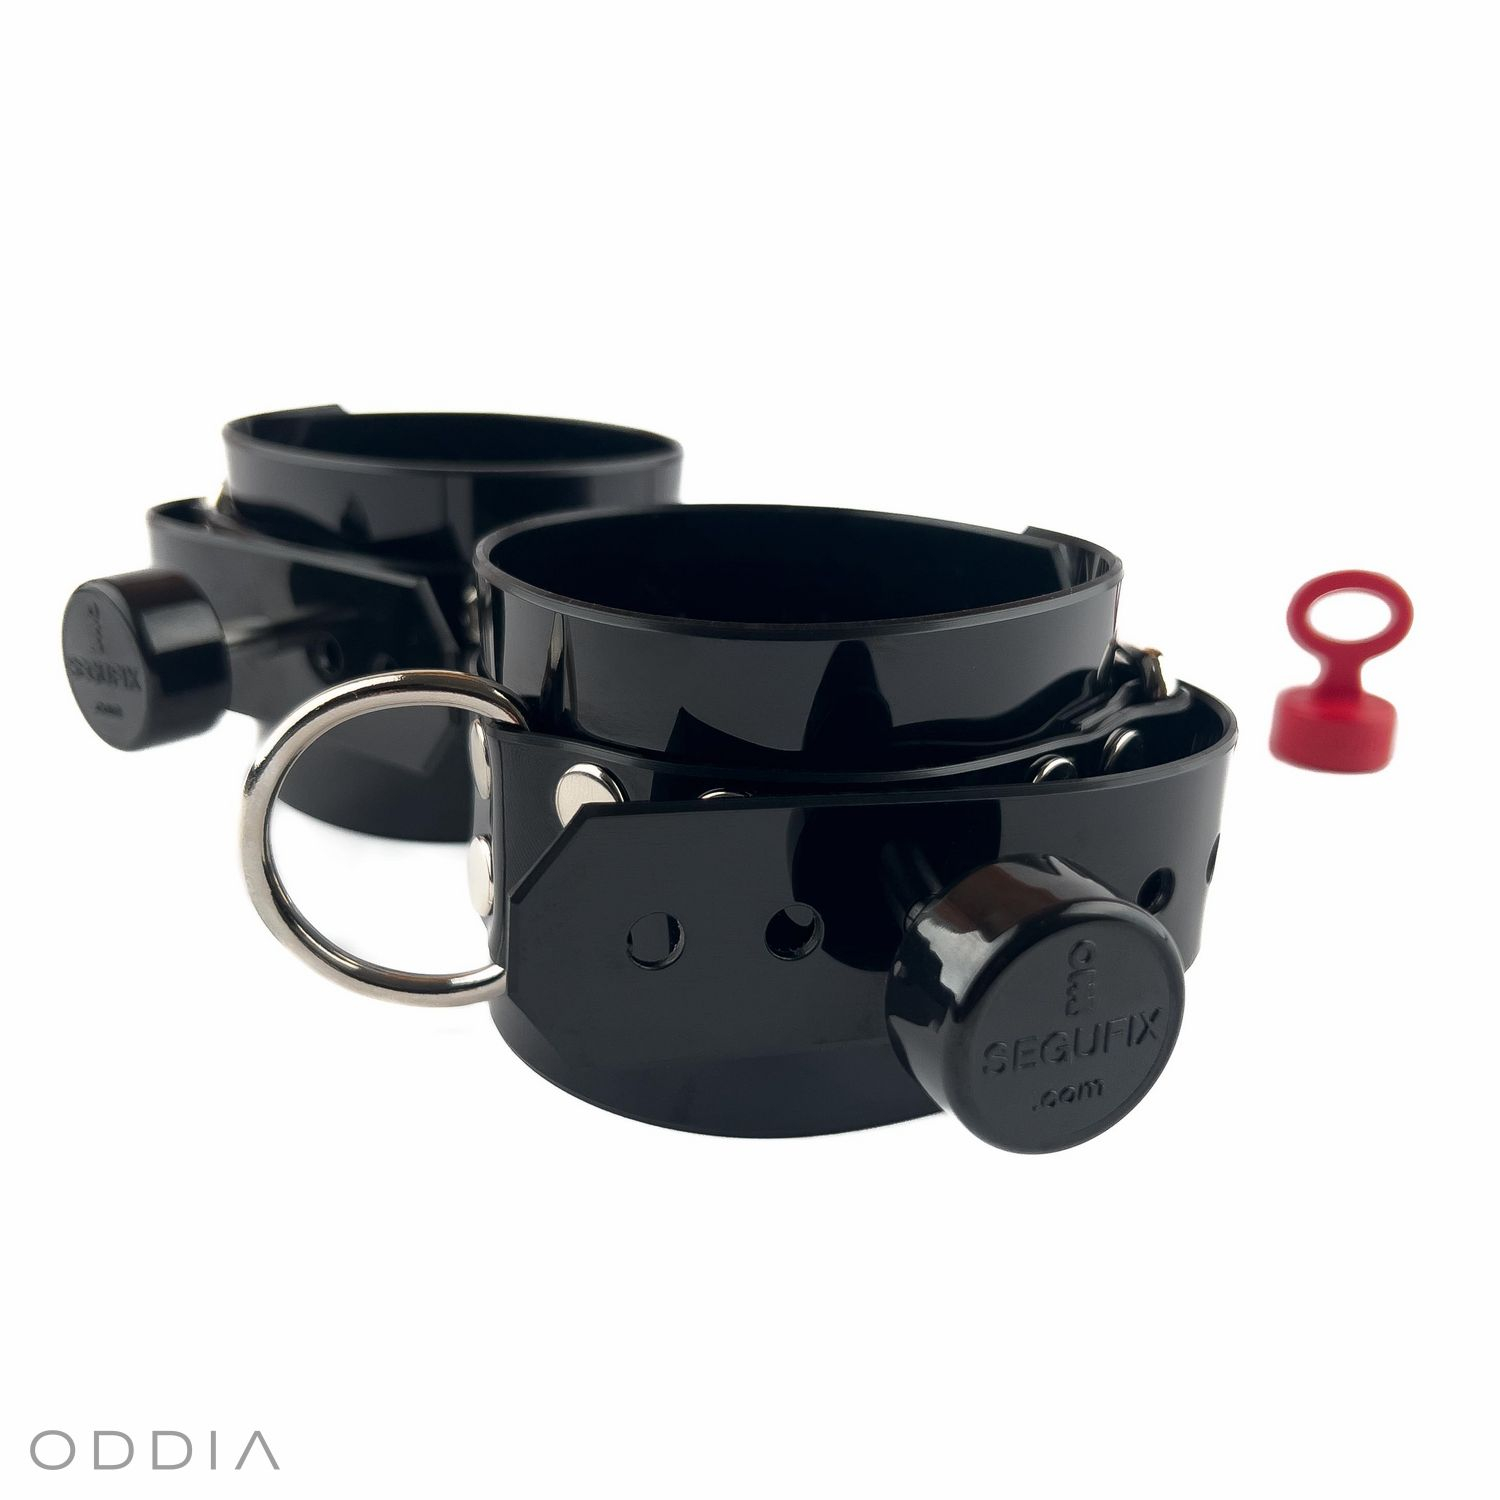 Čierne zamykateľné BDSM putá so Segufix magnetickými zámkami a kvalitnou kováčskou prácou v striebornej farbe.